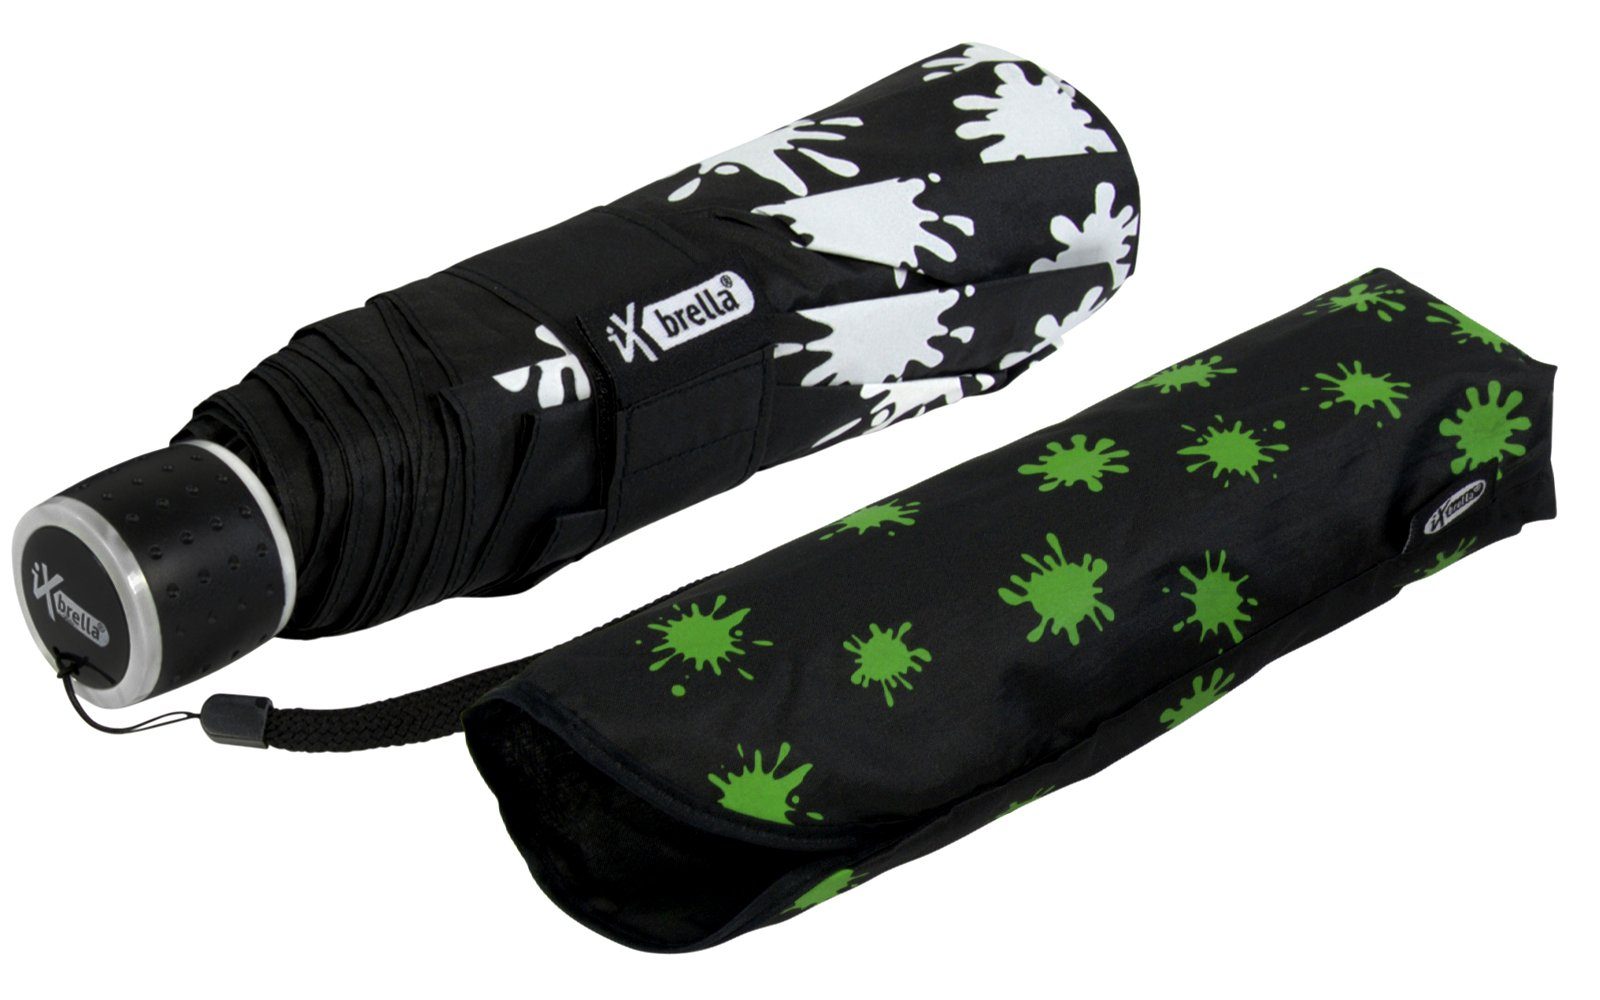 leicht, iX-brella - Mini Farbkleckse - - Farbänderung Ultra Taschenregenschirm bei extra Dach Nässe mit schwarz-weiß-neongrün neon-grün großem Light